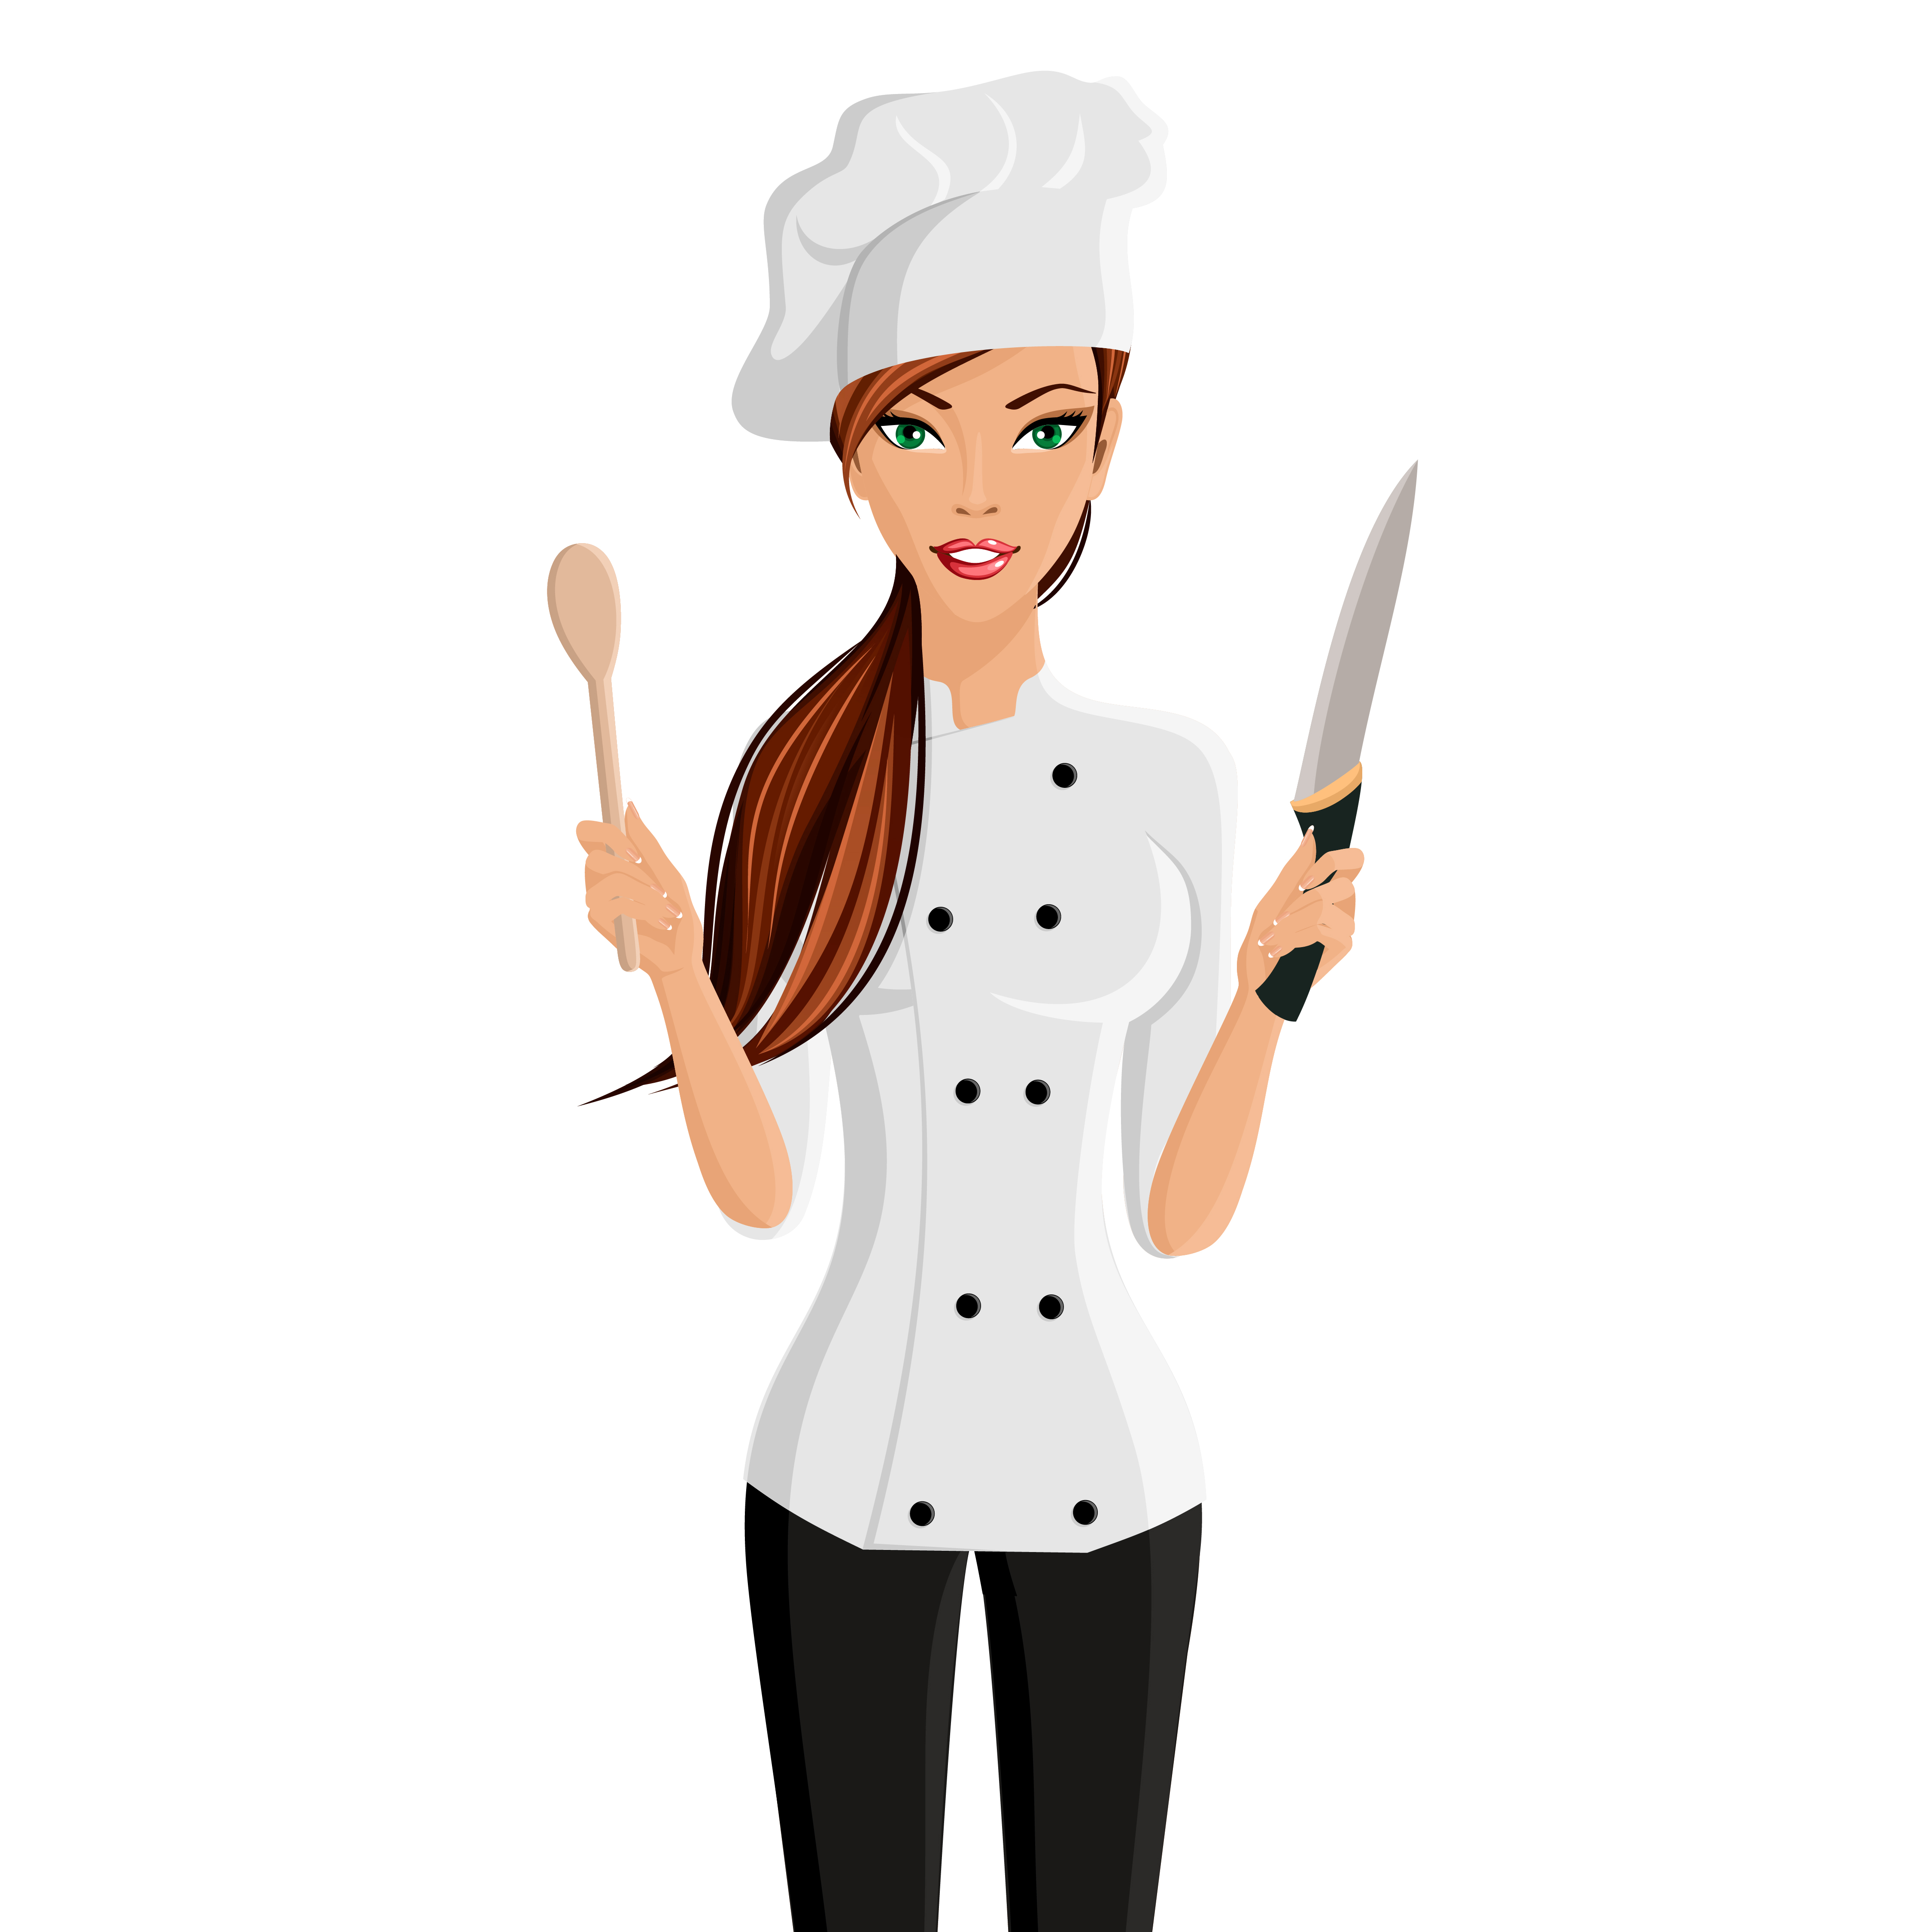 Download Woman chef portrait - Download Free Vectors, Clipart Graphics & Vector Art